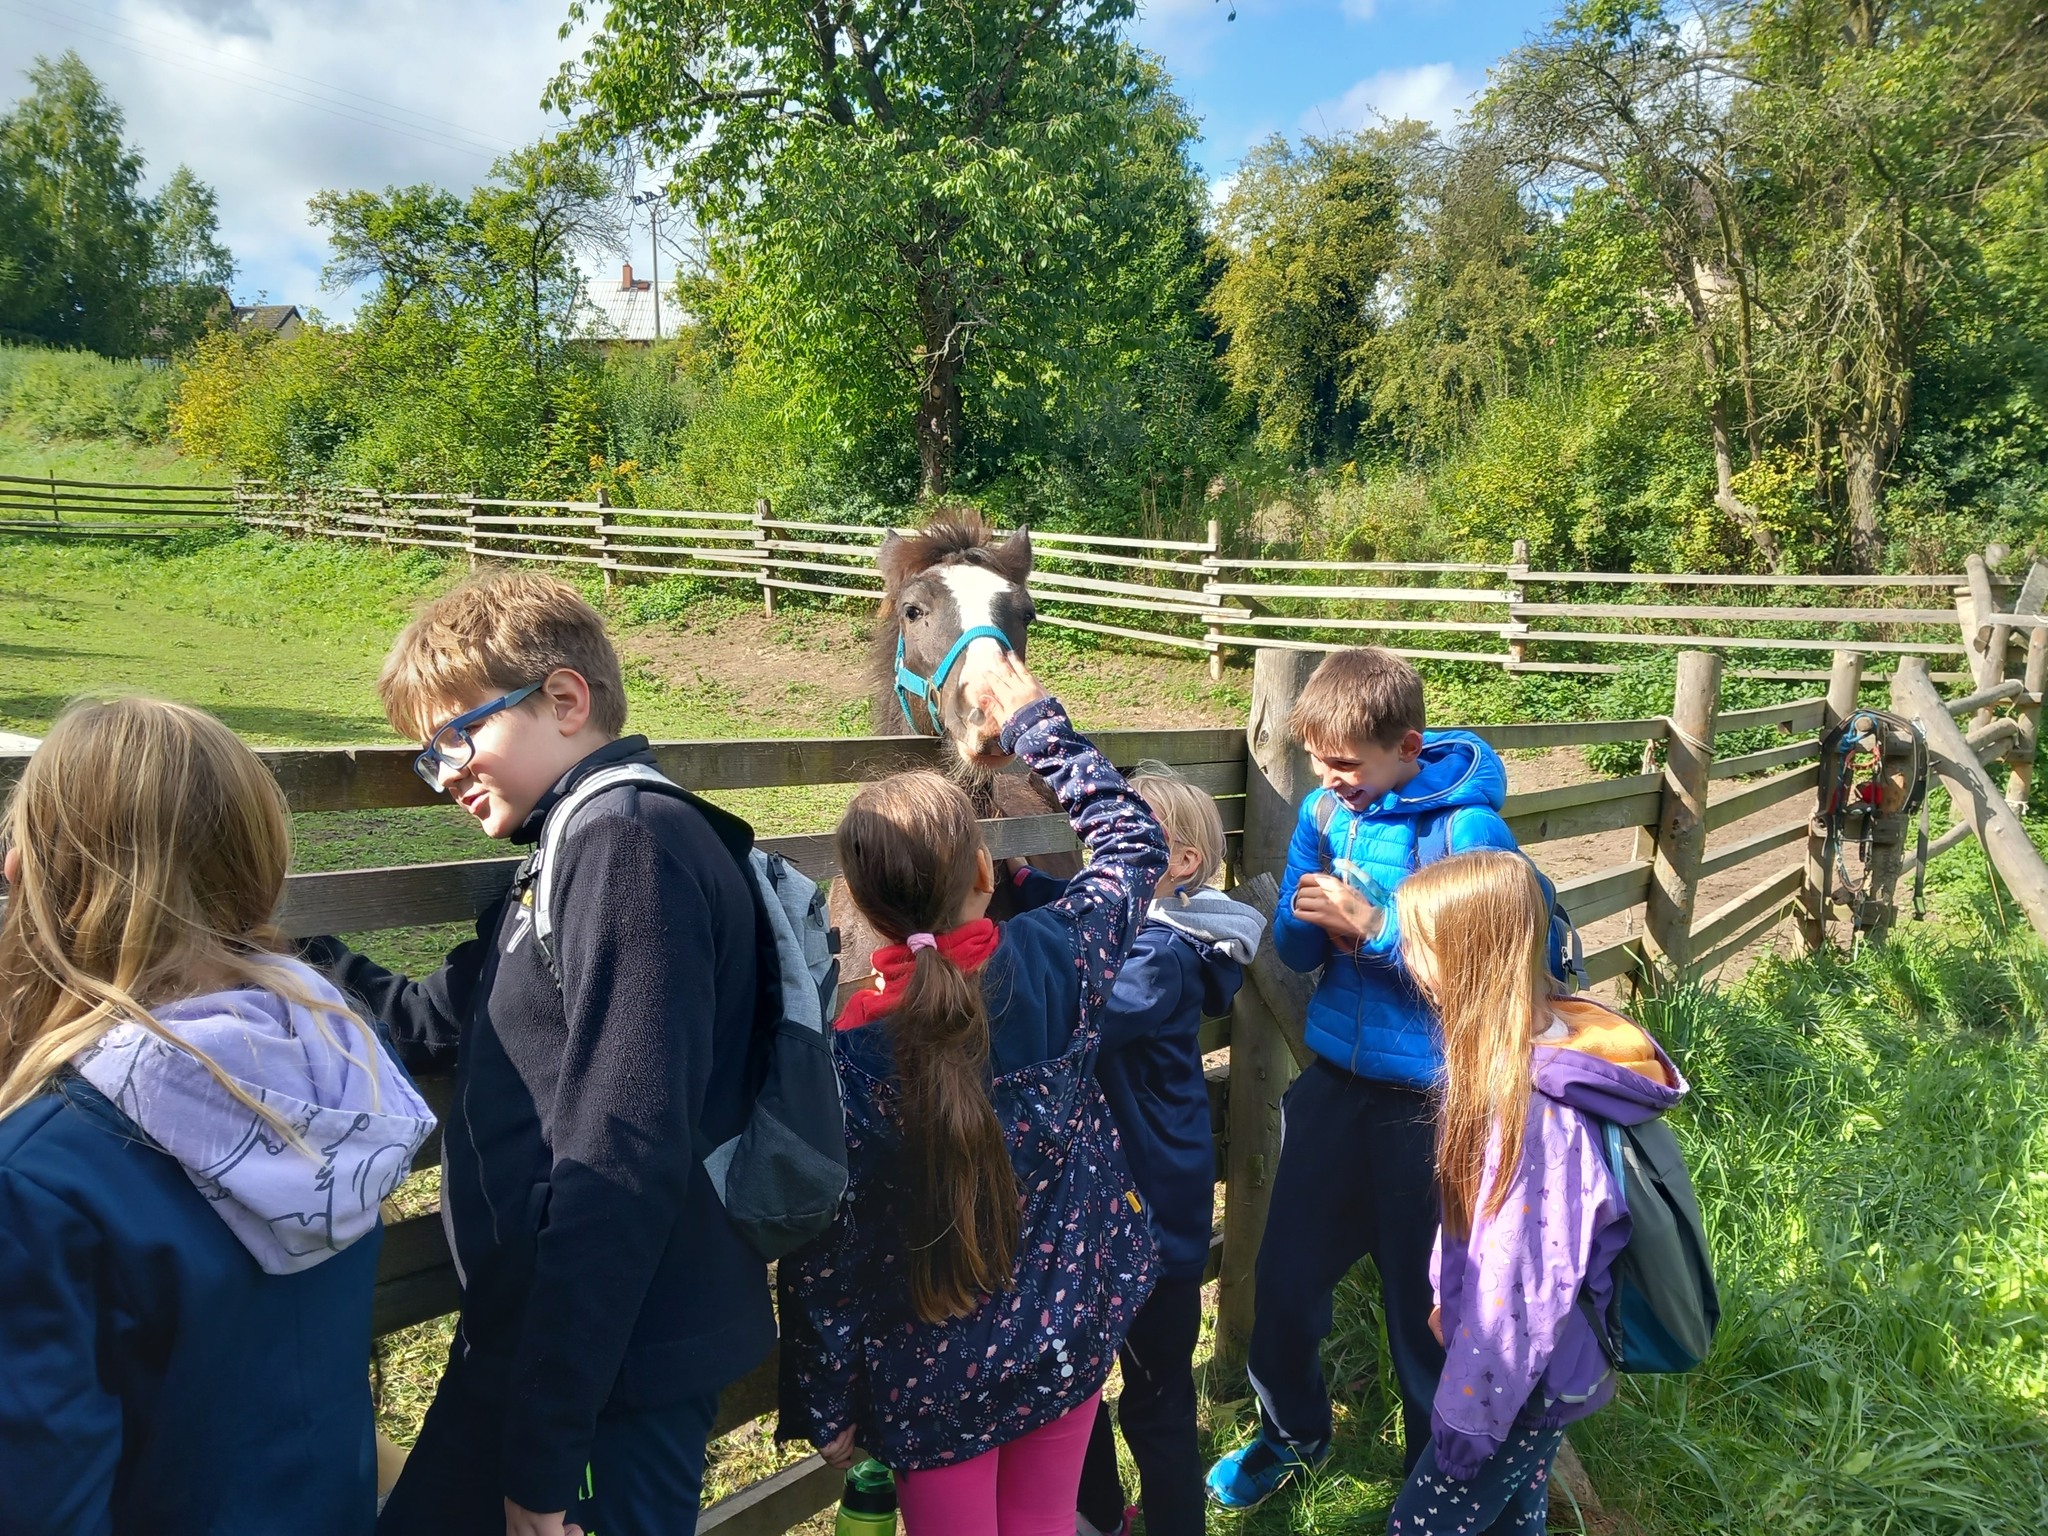 Děti na letním táboře s koňmi si hladí koně na procházce v přírodě.